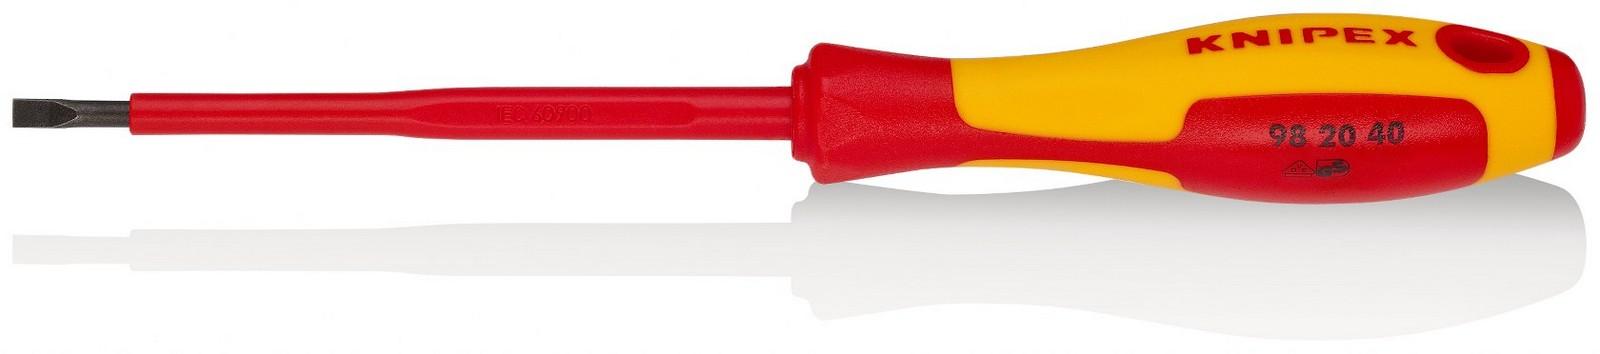 KNIPEX Odvijač ravni 1000V VDE 4mm 98 20 40 crveno-žuti